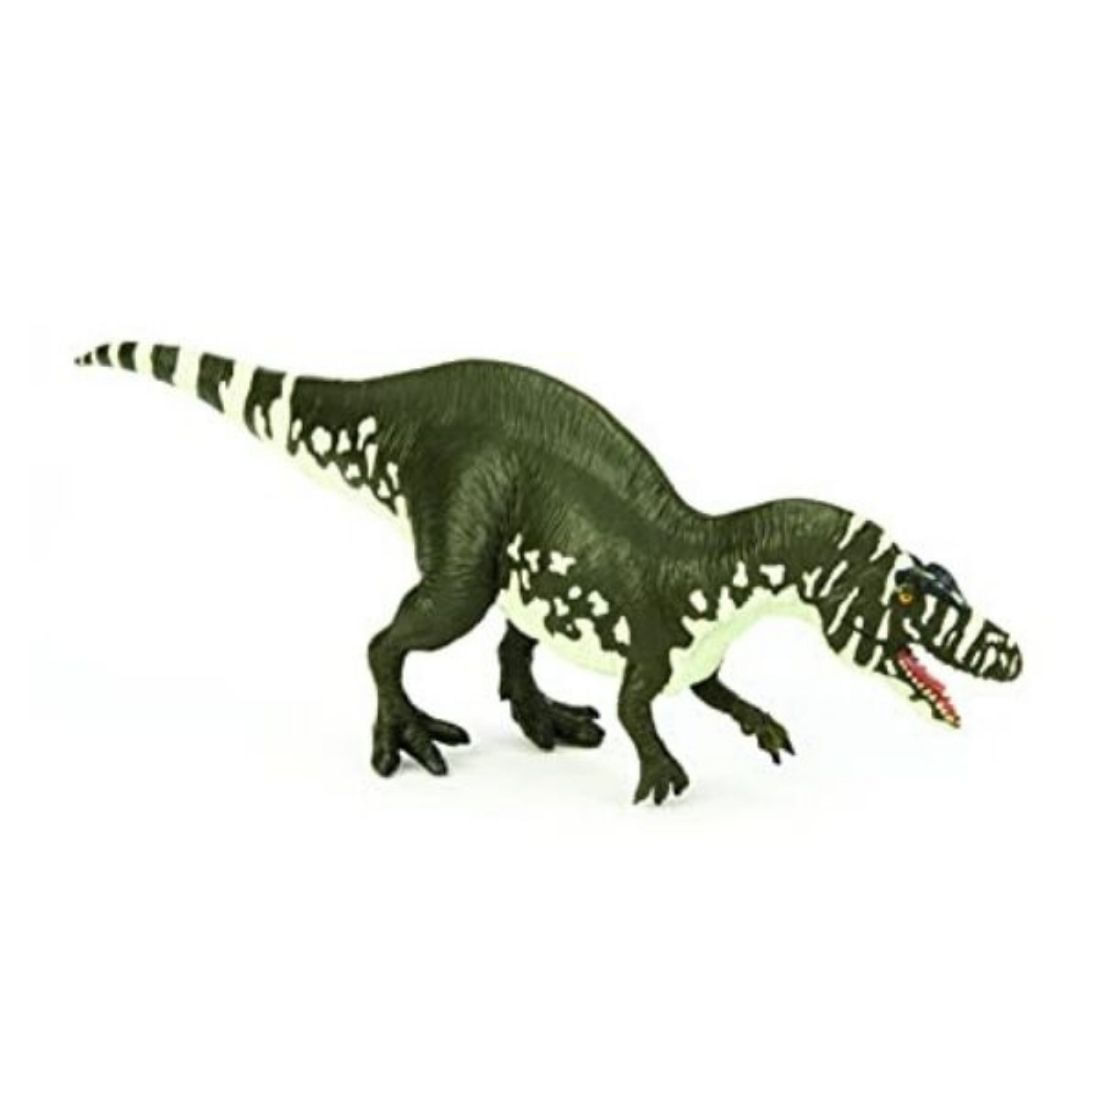 Dinosaurio Acrocanthosaurus Atokensis Terra An-4030